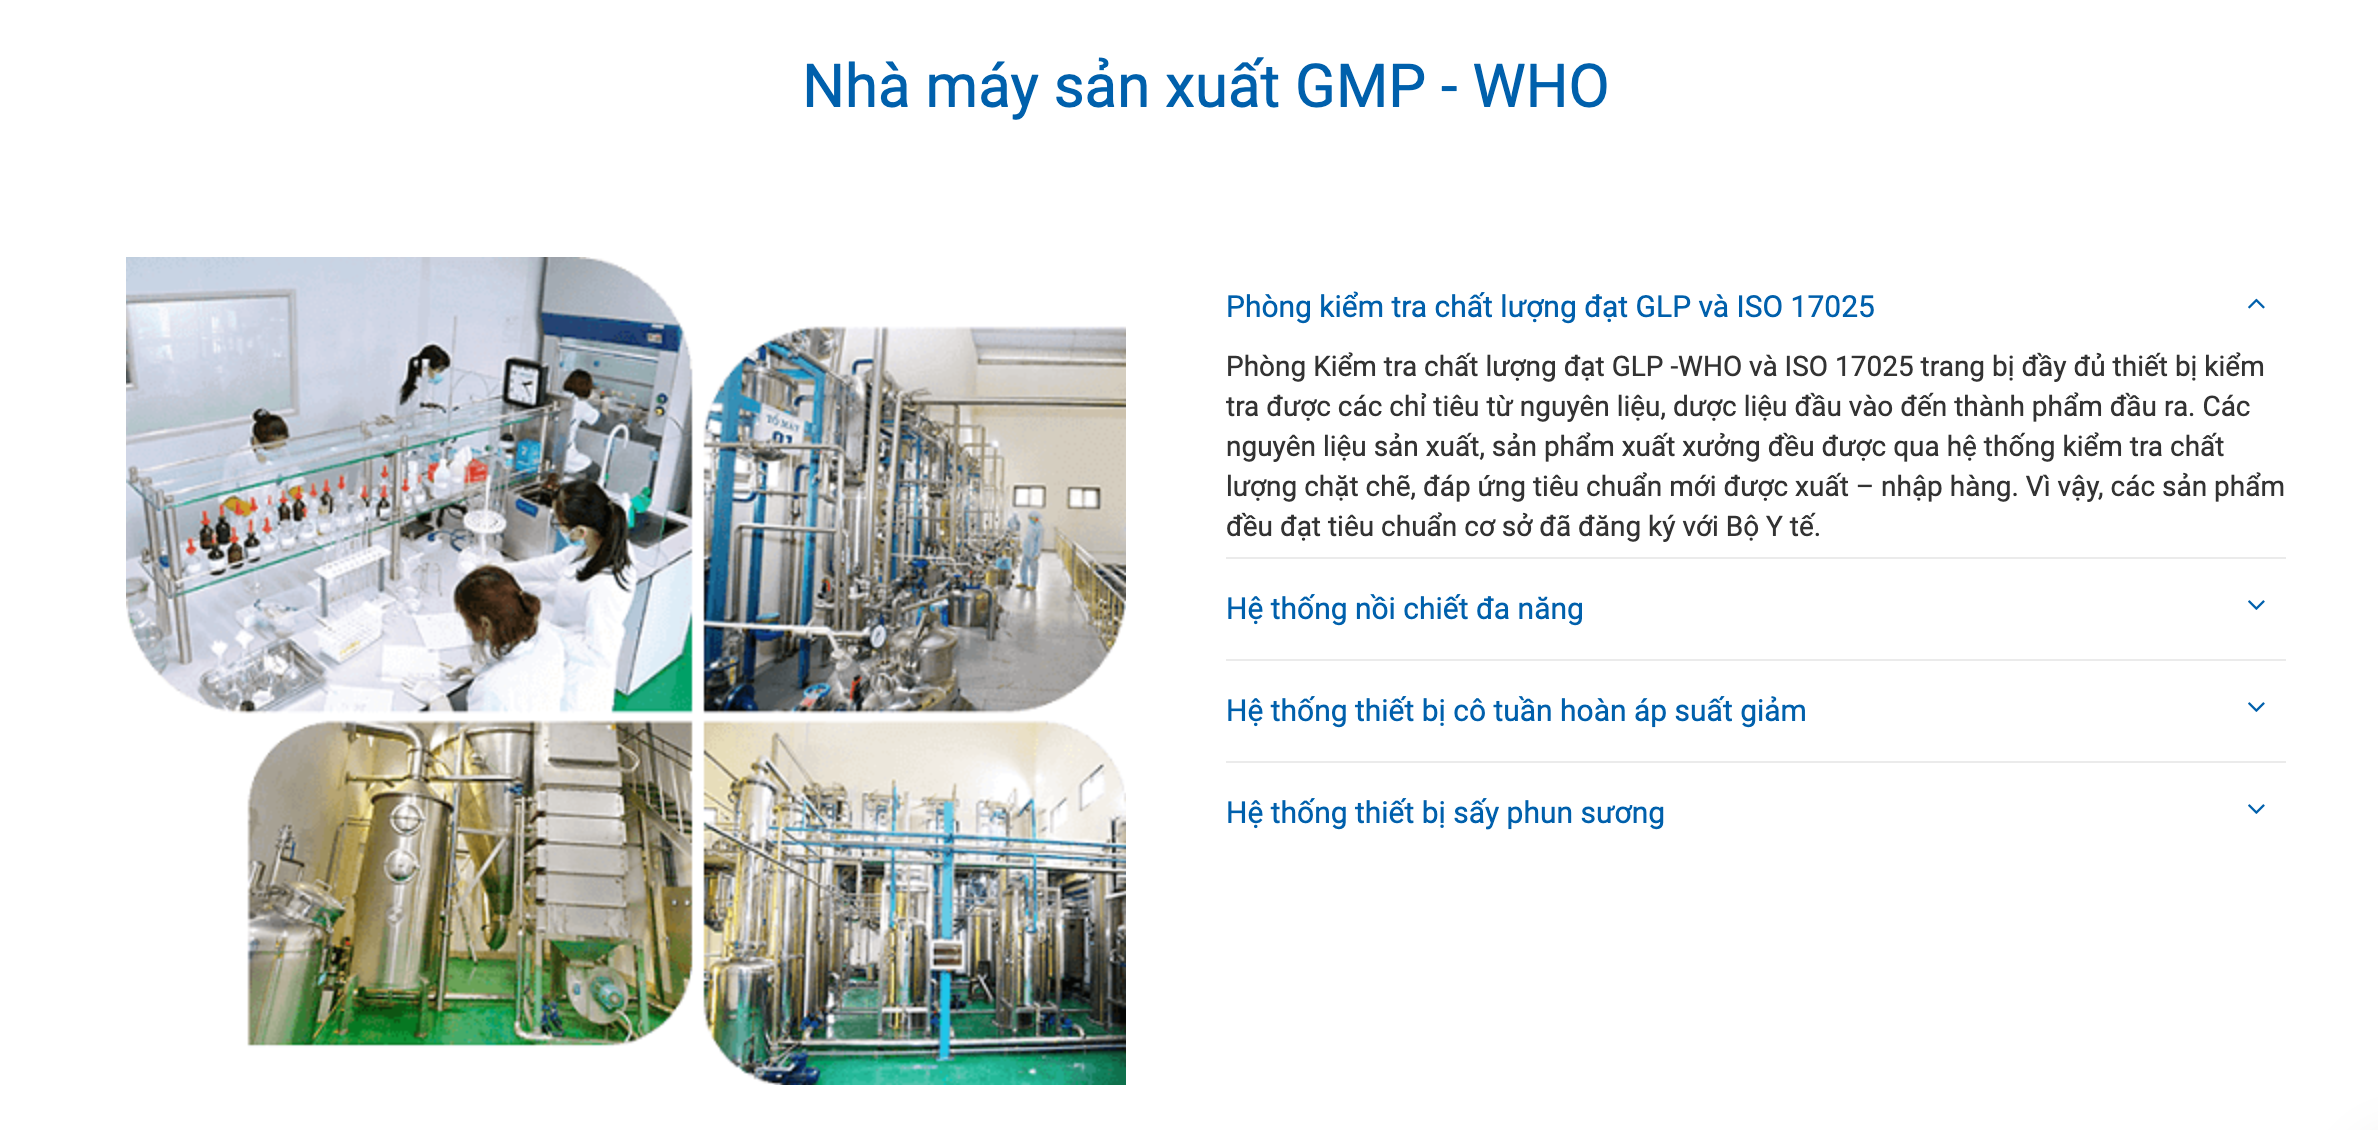 Hình ảnh nhà máy sản xuất của Công ty cổ phần Dược liệu Việt Nam. Ảnh: Chụp màn hình.